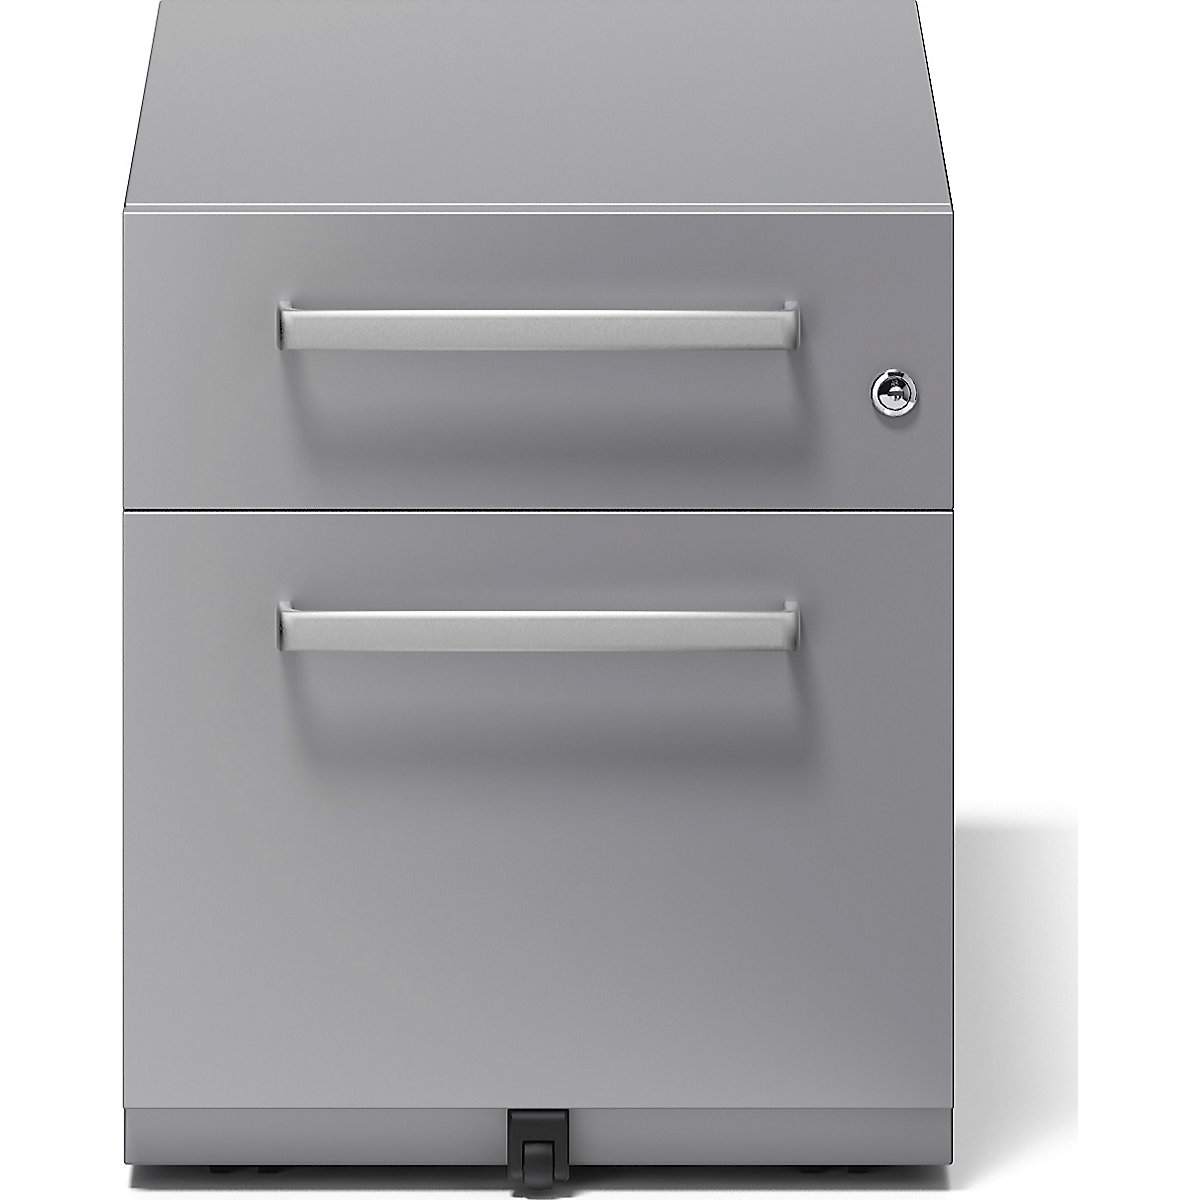 Buck rodante Note™ con 1 archivador colgante y 1 cajón universal – BISLEY (Imagen del producto 12)